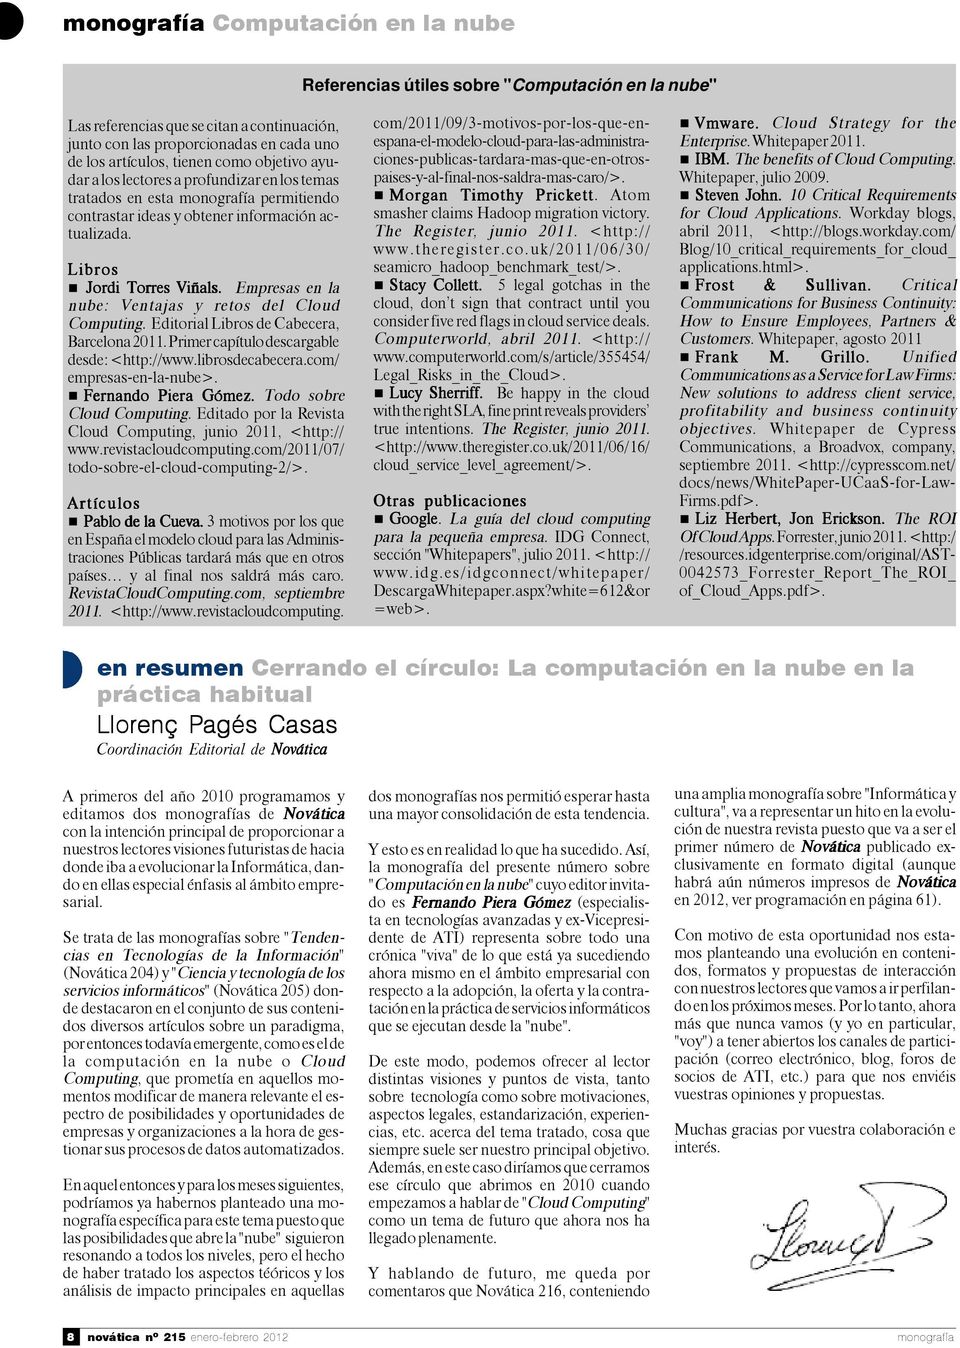 Empresas en la nube: Ventajas y retos del Cloud Computing. Editorial Libros de Cabecera, Barcelona 2011. Primer capítulo descargable desde: <http://www.librosdecabecera.com/ empresas-en-la-nube>.